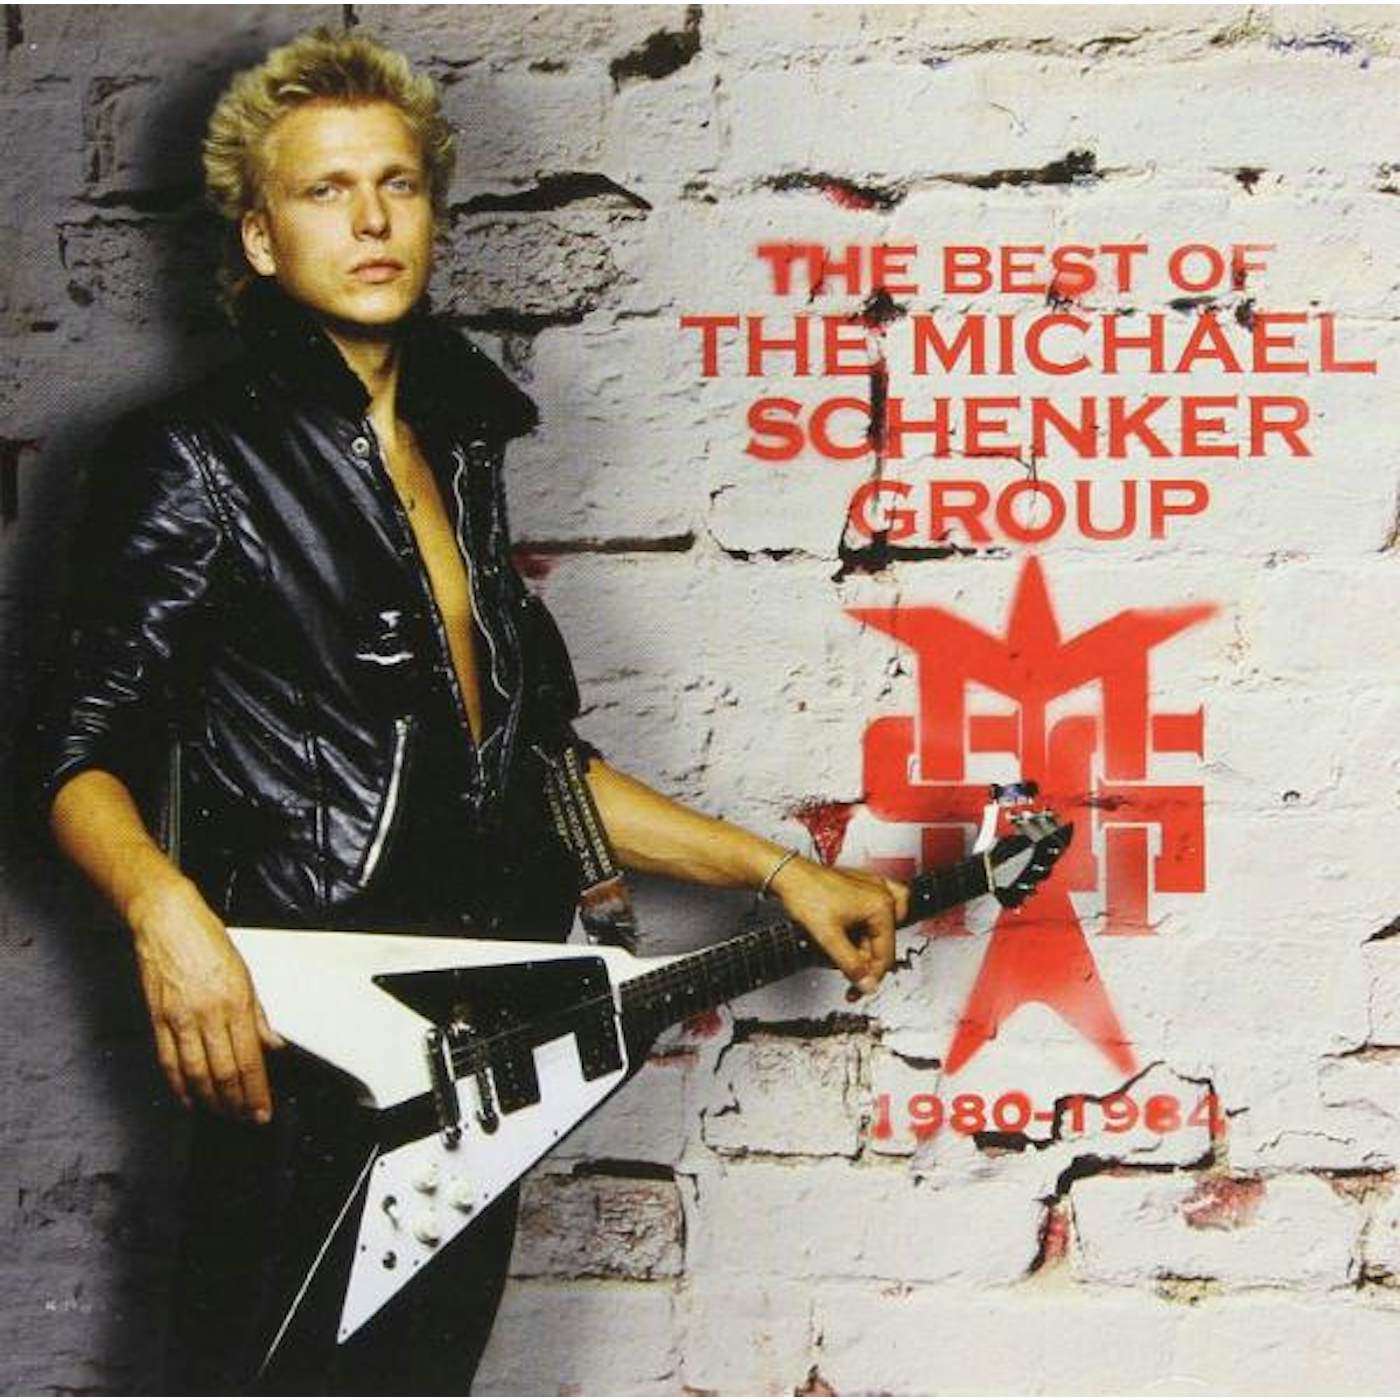 Michael Schenker Group BEST OF 1980 - 1984 CD